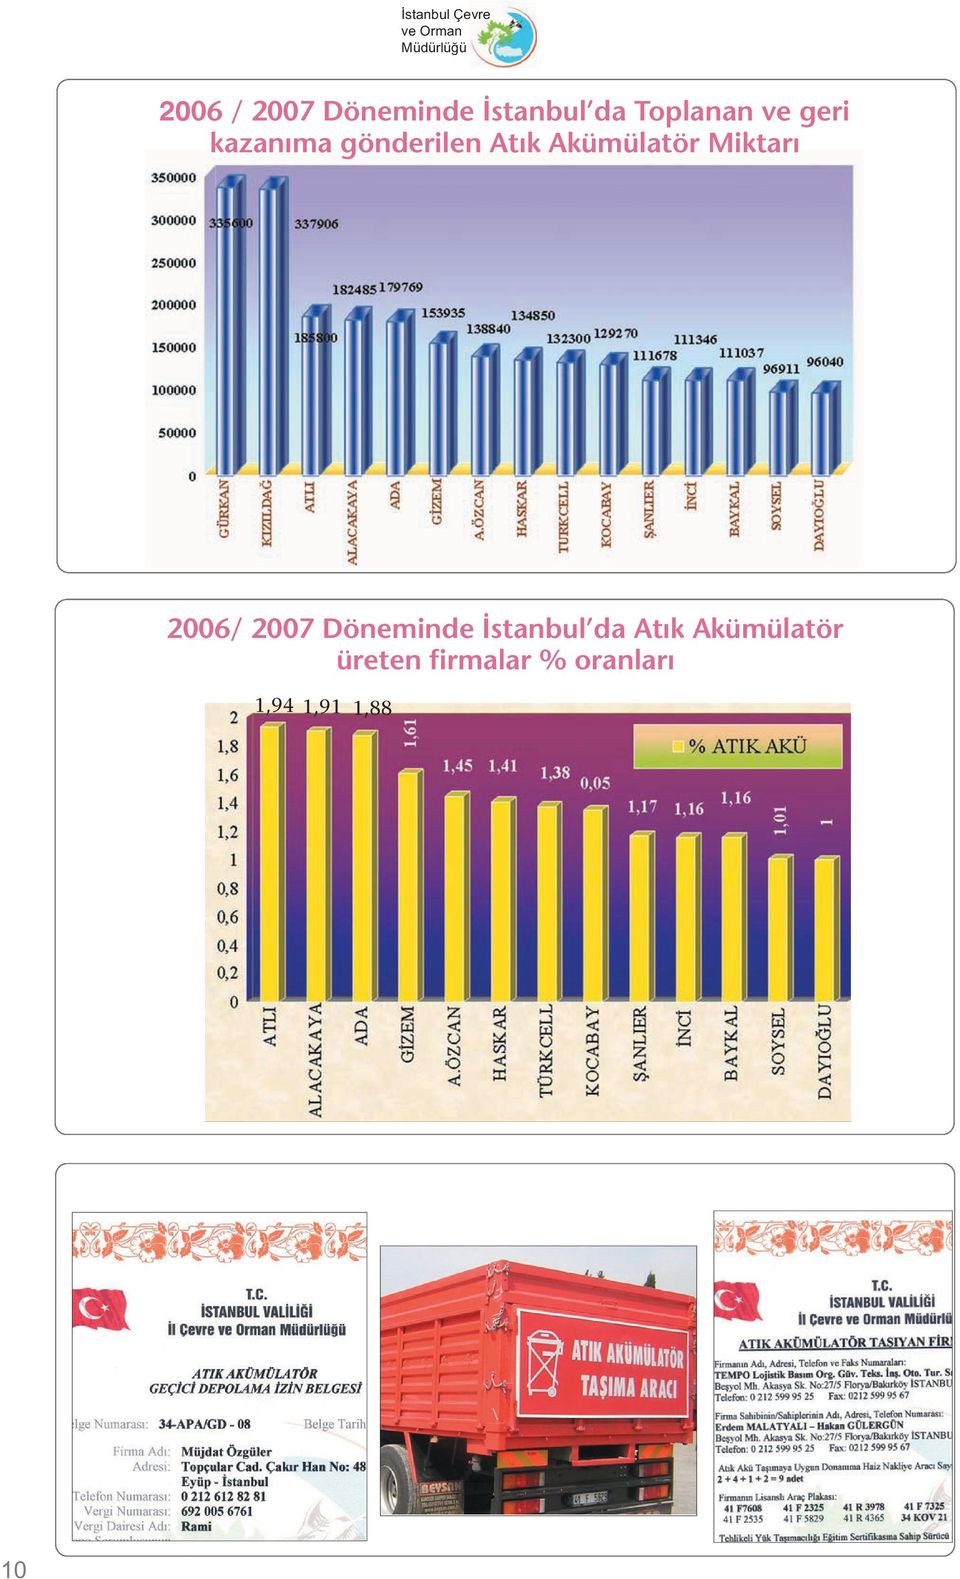 Akümülatör Miktarı 2006/ 2007 Döneminde İstanbul da